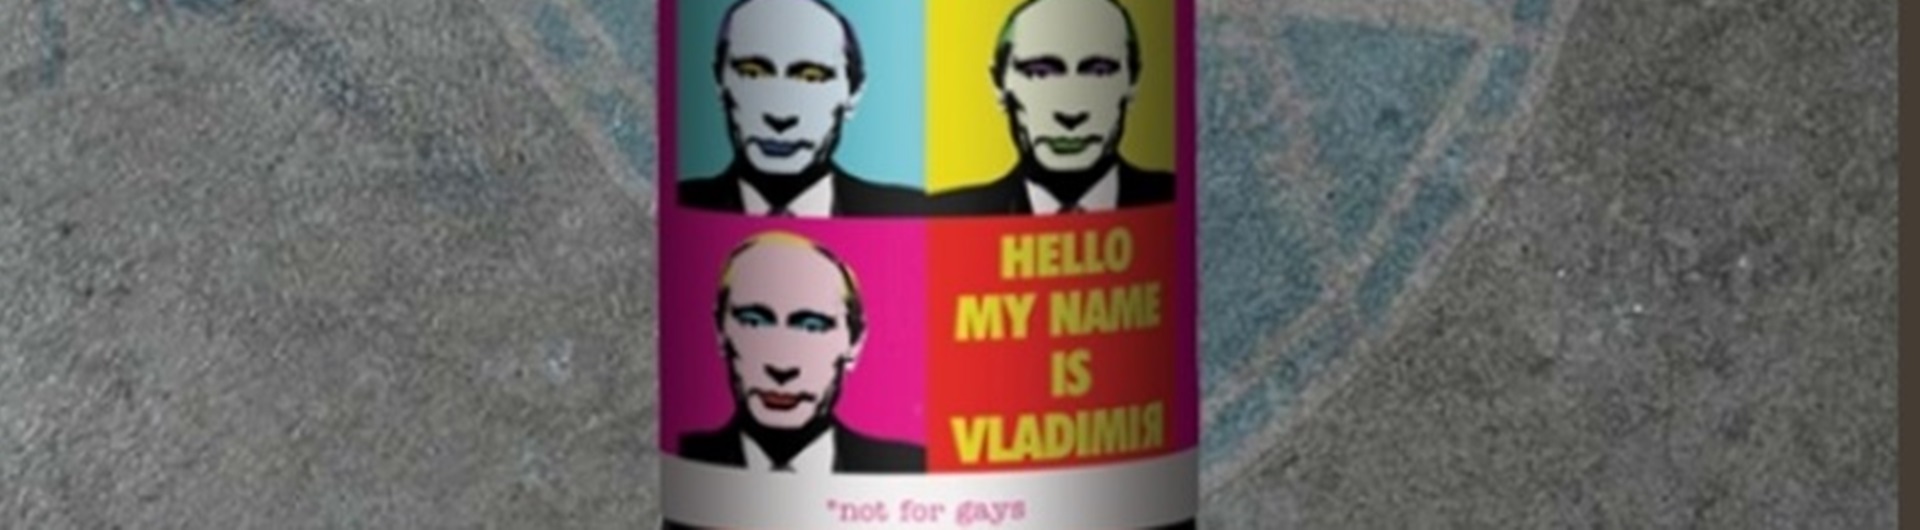 Dzień dobry, mam na imię Władimir – marki szydzą z homofobii Putina